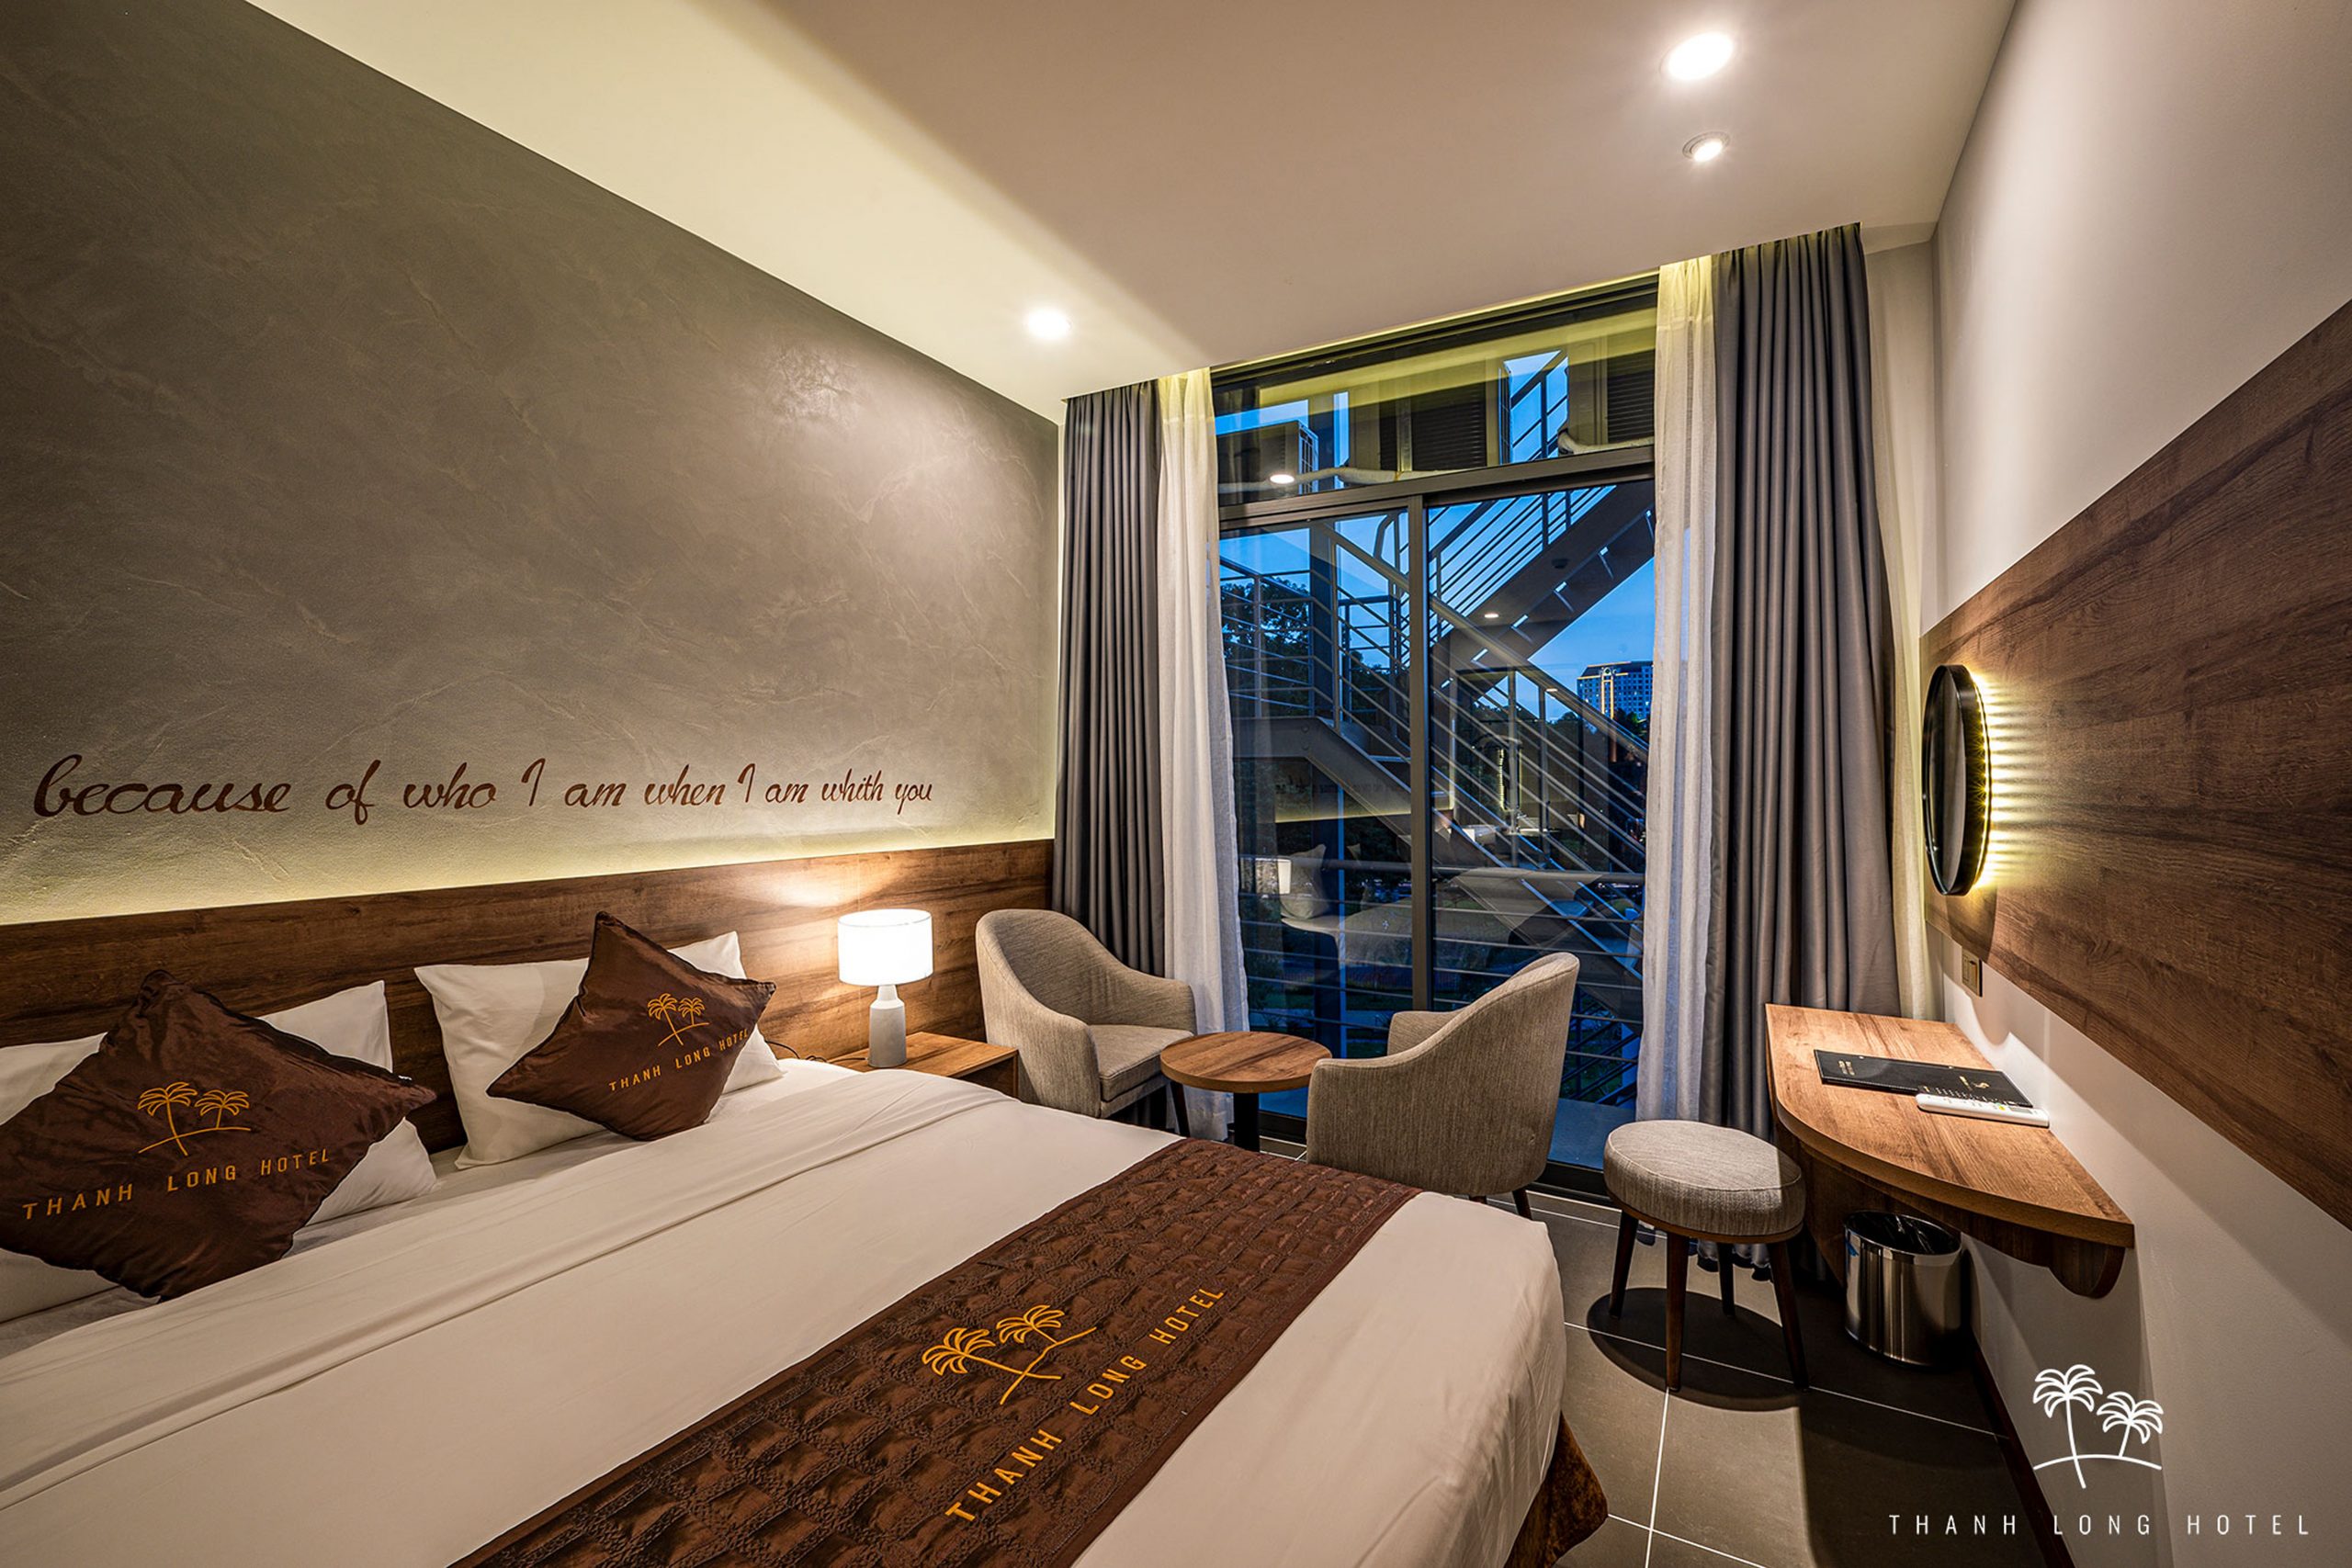 Thành Long Hotel – Hệ thống chuỗi khách sạn 3 sao gần sân bay Tân Sơn Nhất cho bạn!